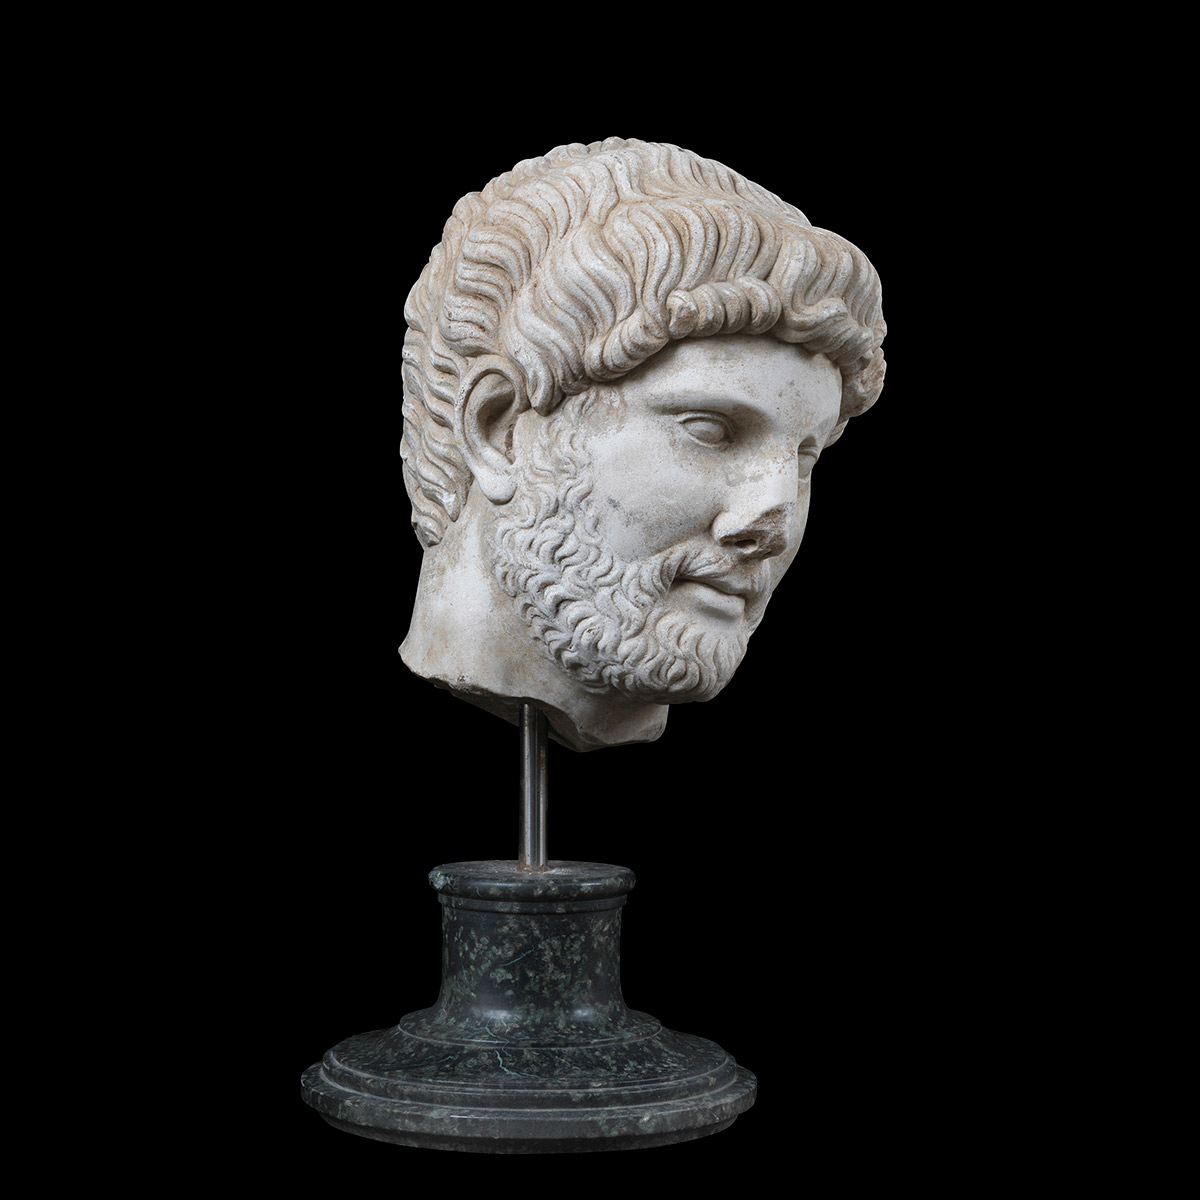 Head of Emperor Hadrian, Italy 19th century